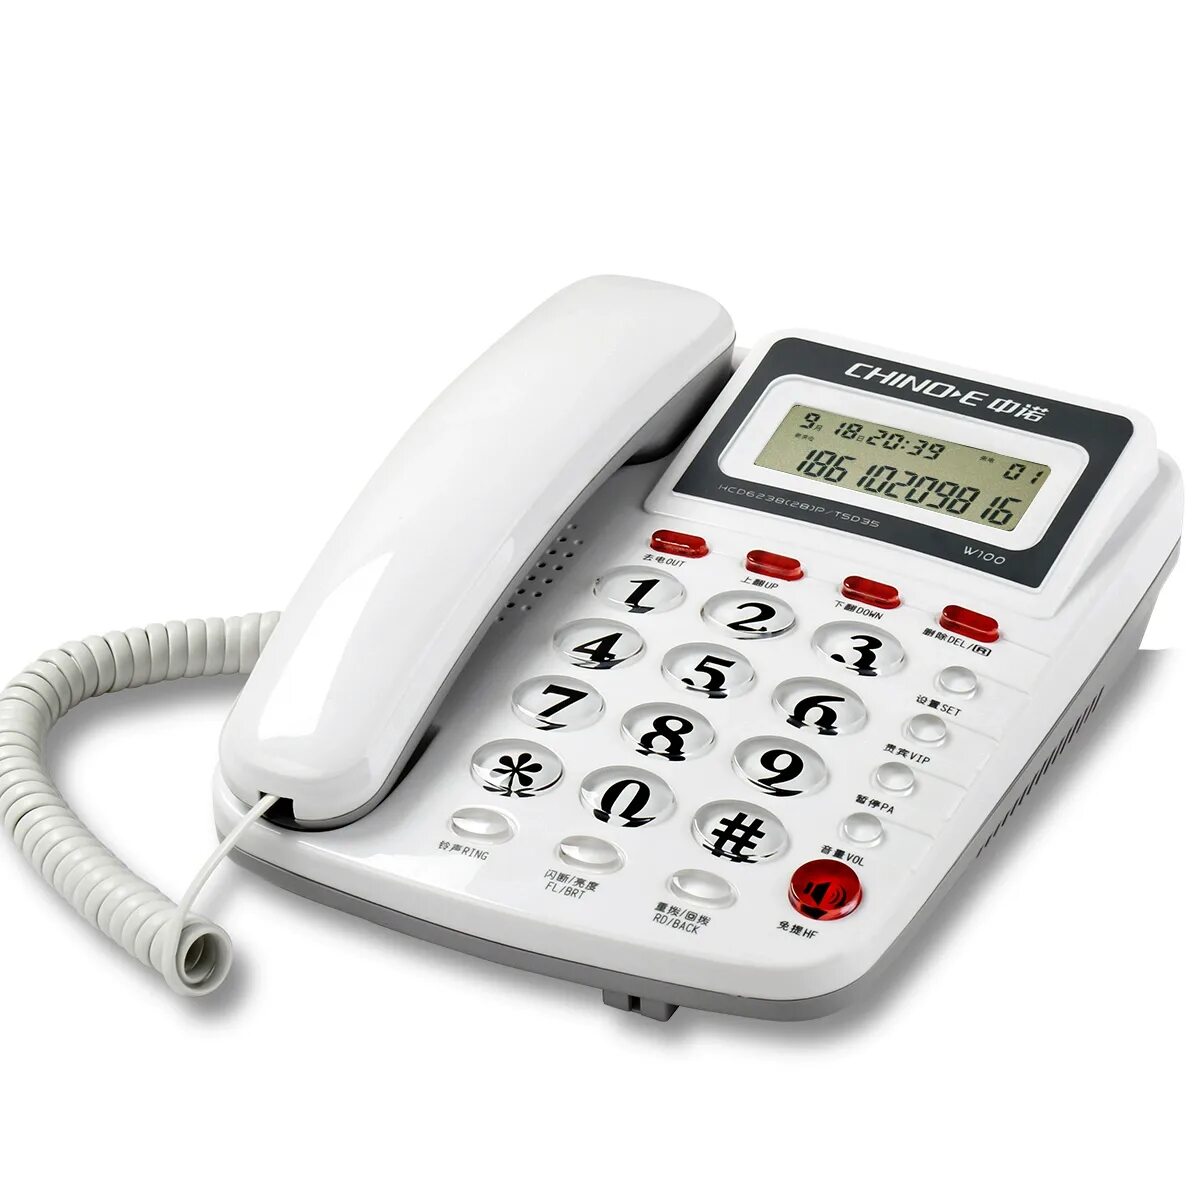 Стационарный телефон Intego kxt210. Проводной стационарный телефон буг202. Стационарный телефон Unitel City. Стационарный телефон model 8080. Стационарный телефон воронеж